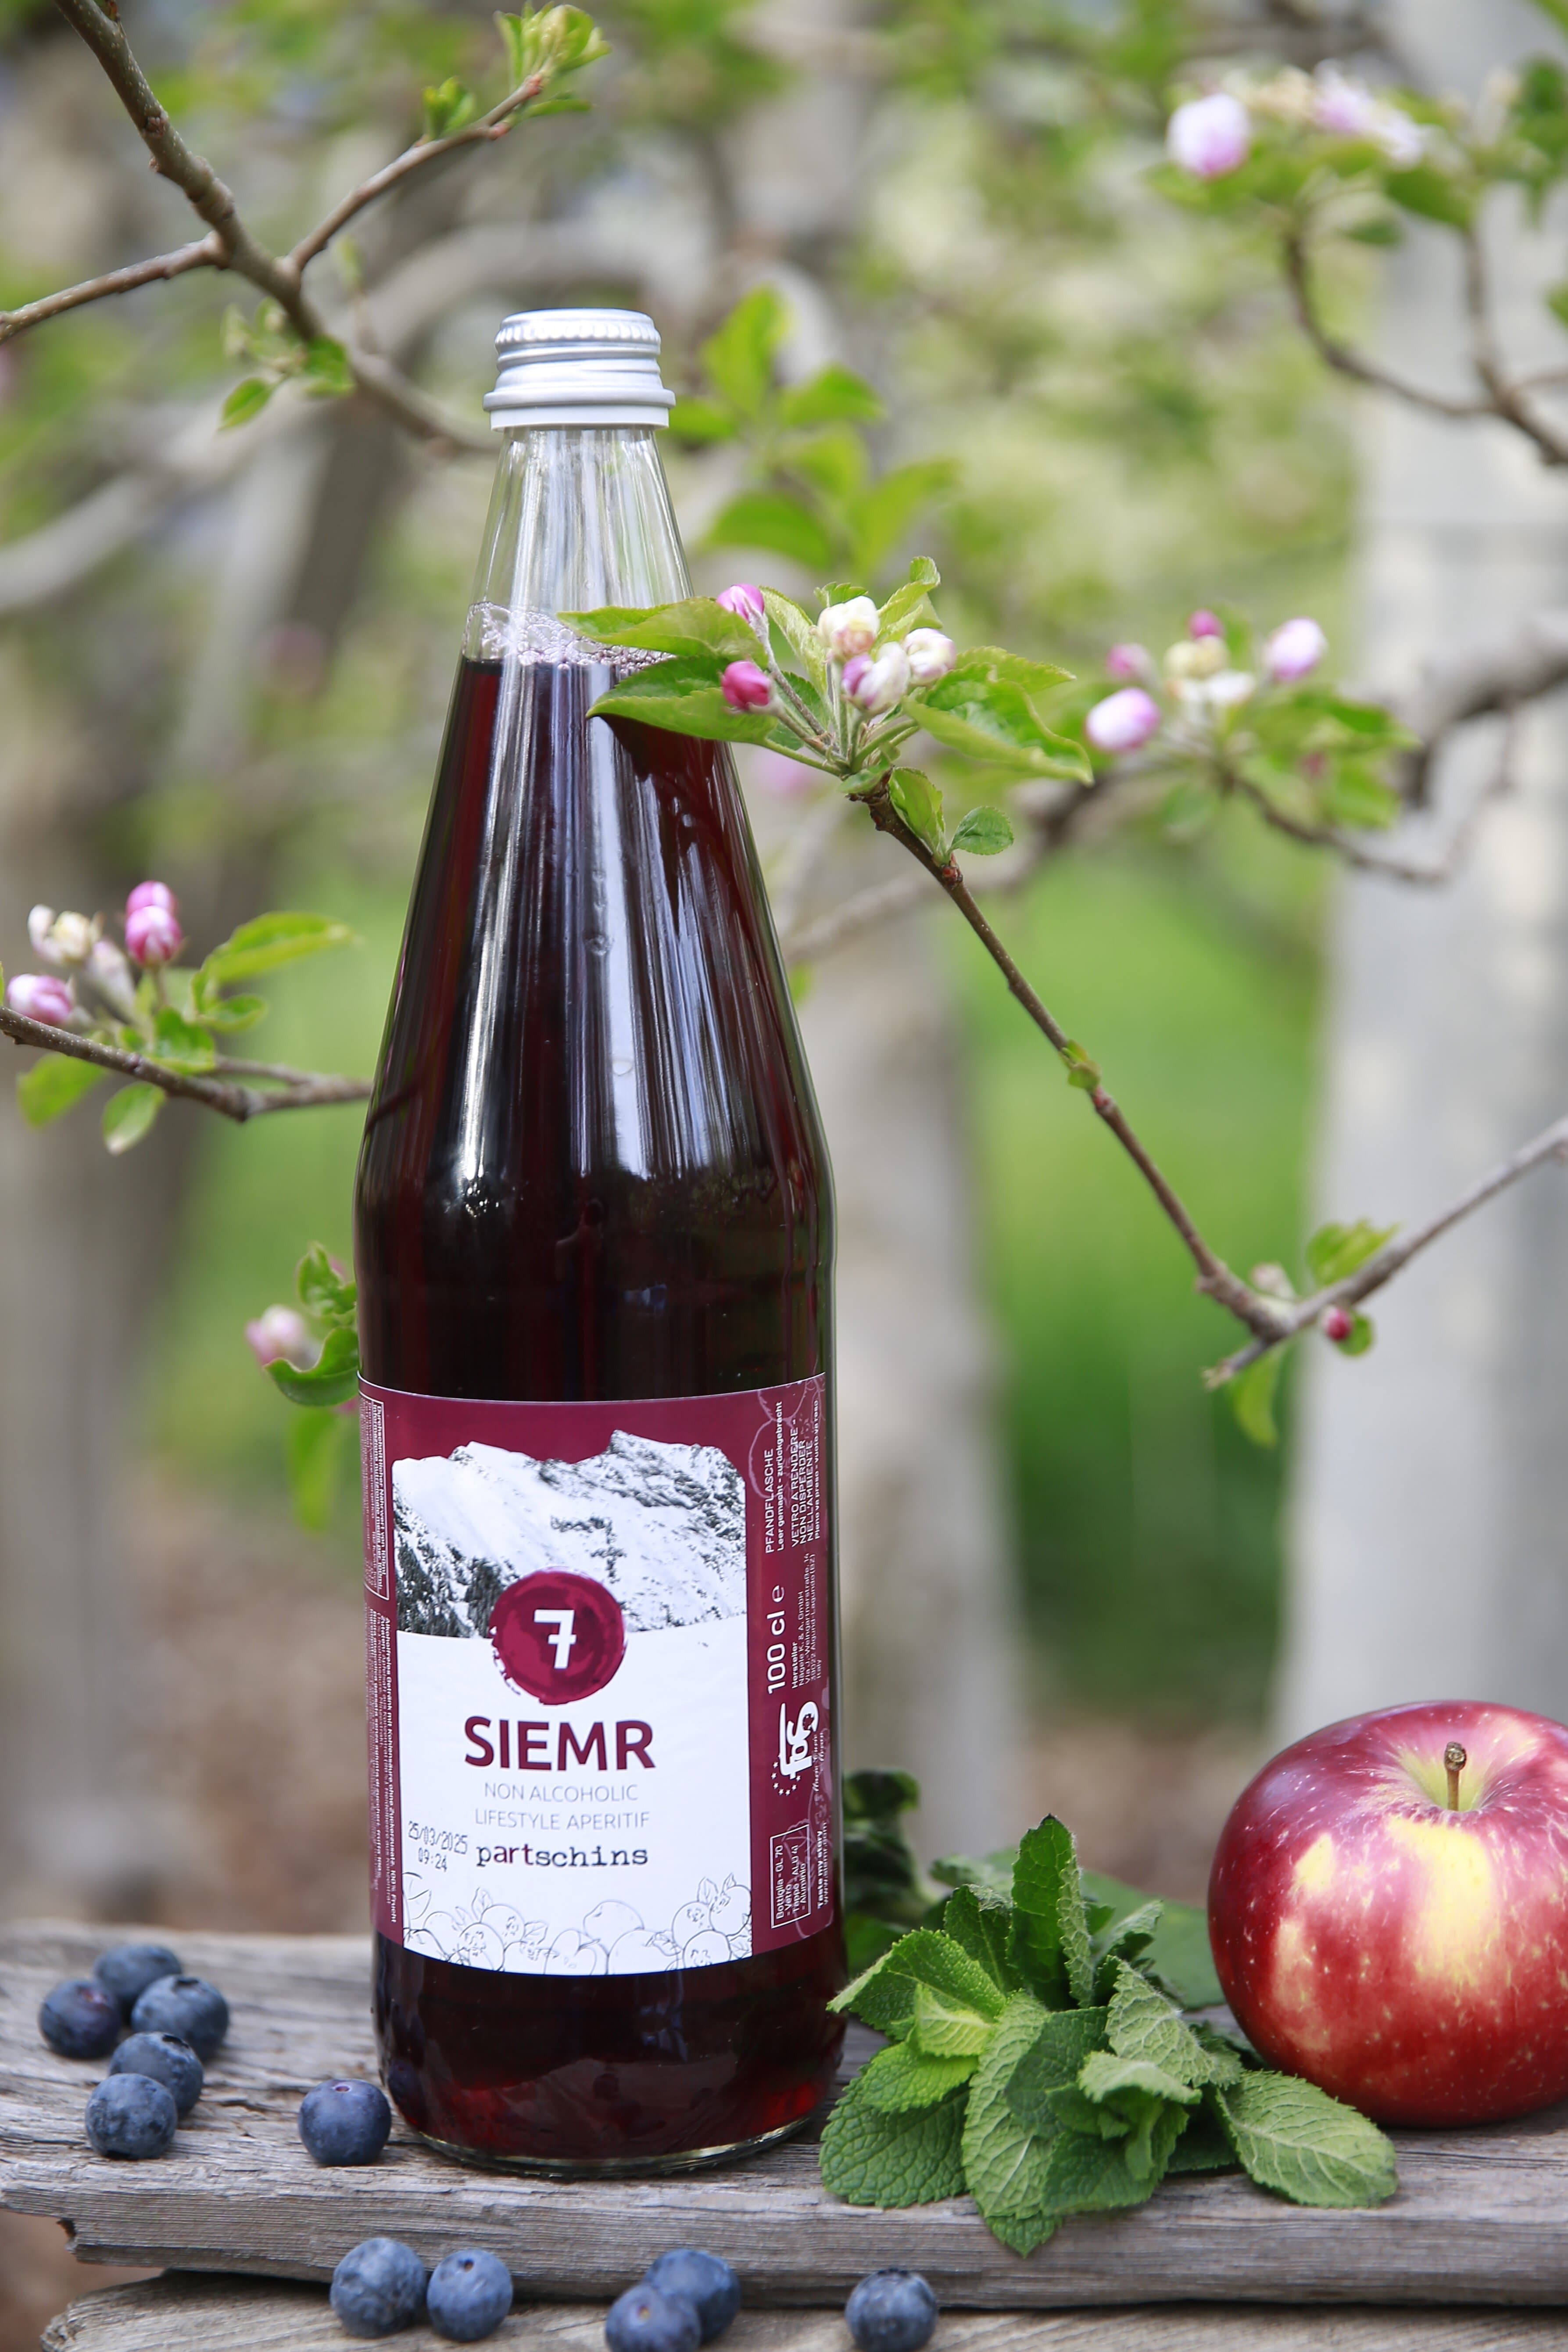 7 - Siemr - Erfrischungsgetränk aus Heidelbeere, Apfel und Minze 1l Flasche